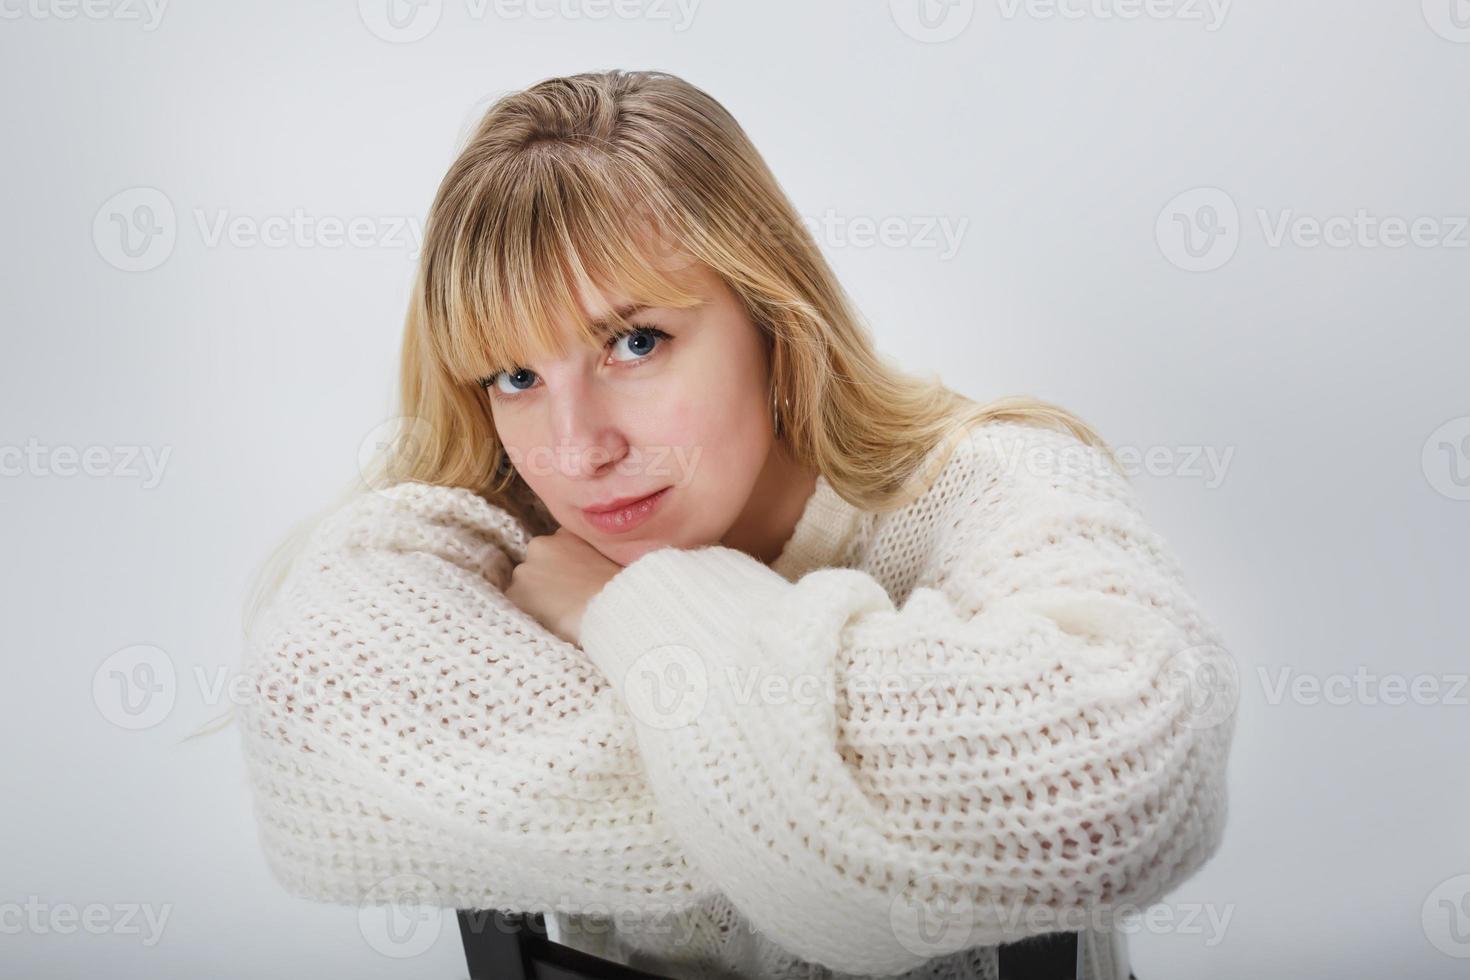 feche o retrato do modelo de menina loira em suéter de lã branca sobre fundo branco no estúdio foto